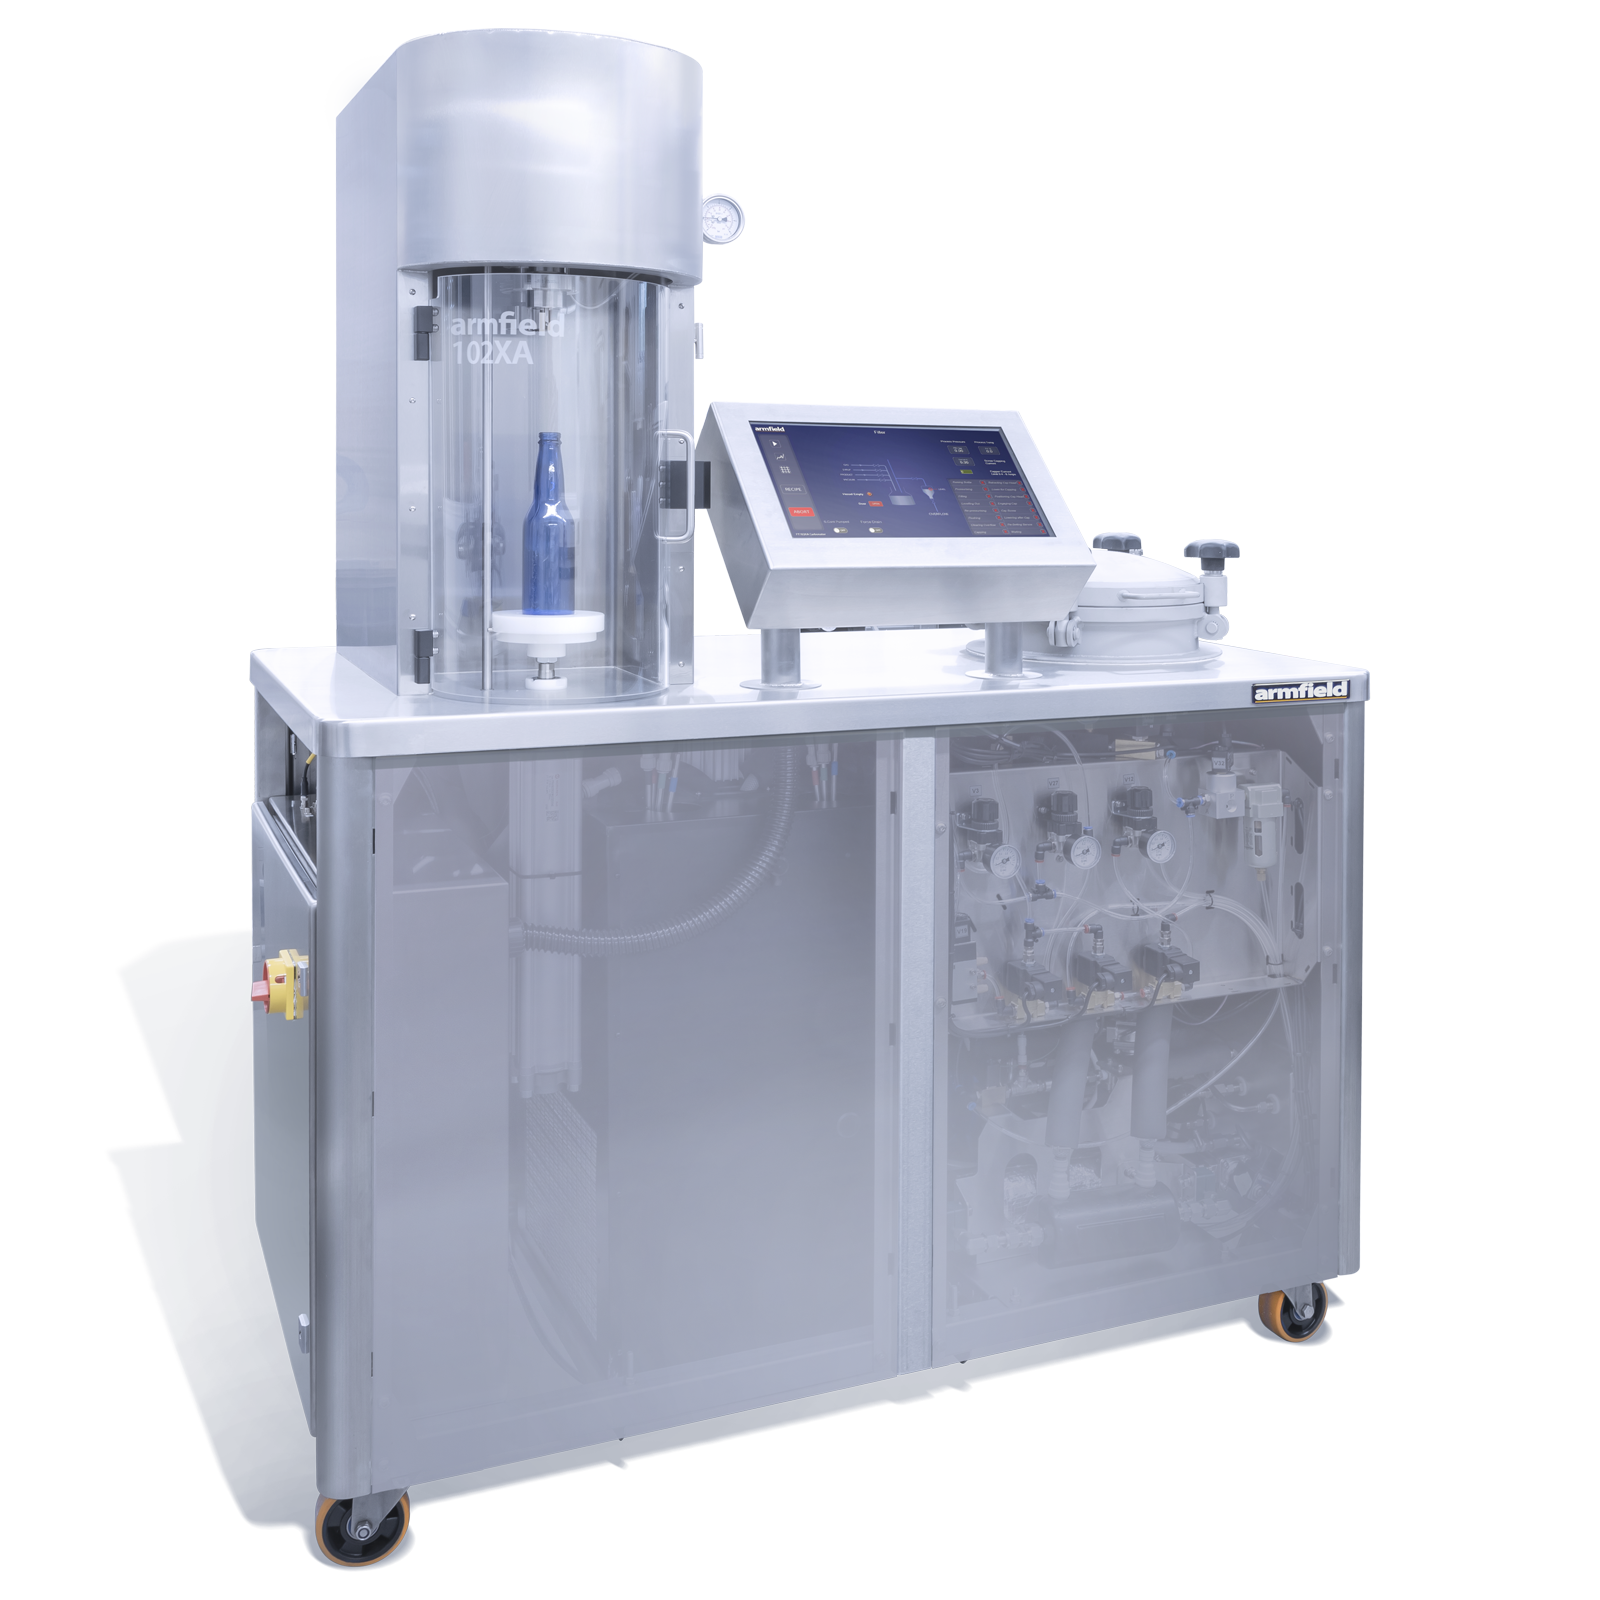 เครื่องมือจำลองการผลิตเครื่องดื่มอัดก๊าซ พร้อมระบบเติมตัวอย่างและปิดผนึกผลิตภัณฑ์แบบอัตโมัติ (Carbonator, Filler & Capping)